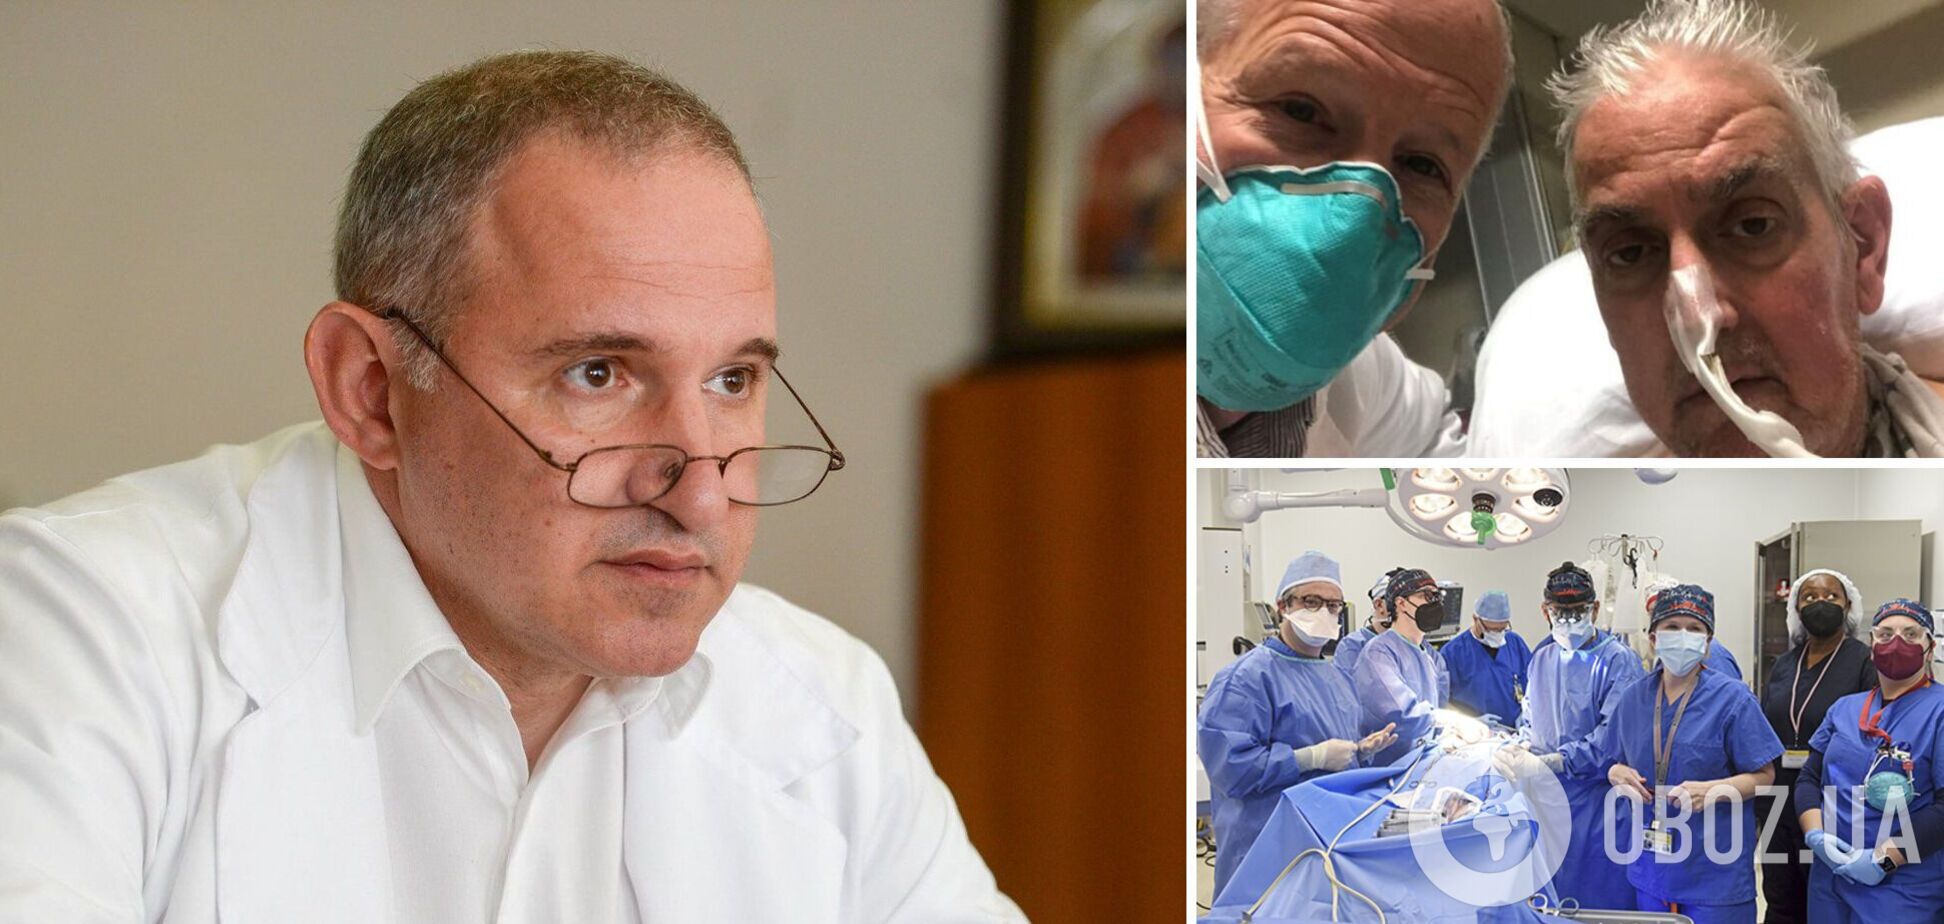  Тодуров прокомментировал операцию по пересадке человеку сердца свиньи, которая прошла в Америке